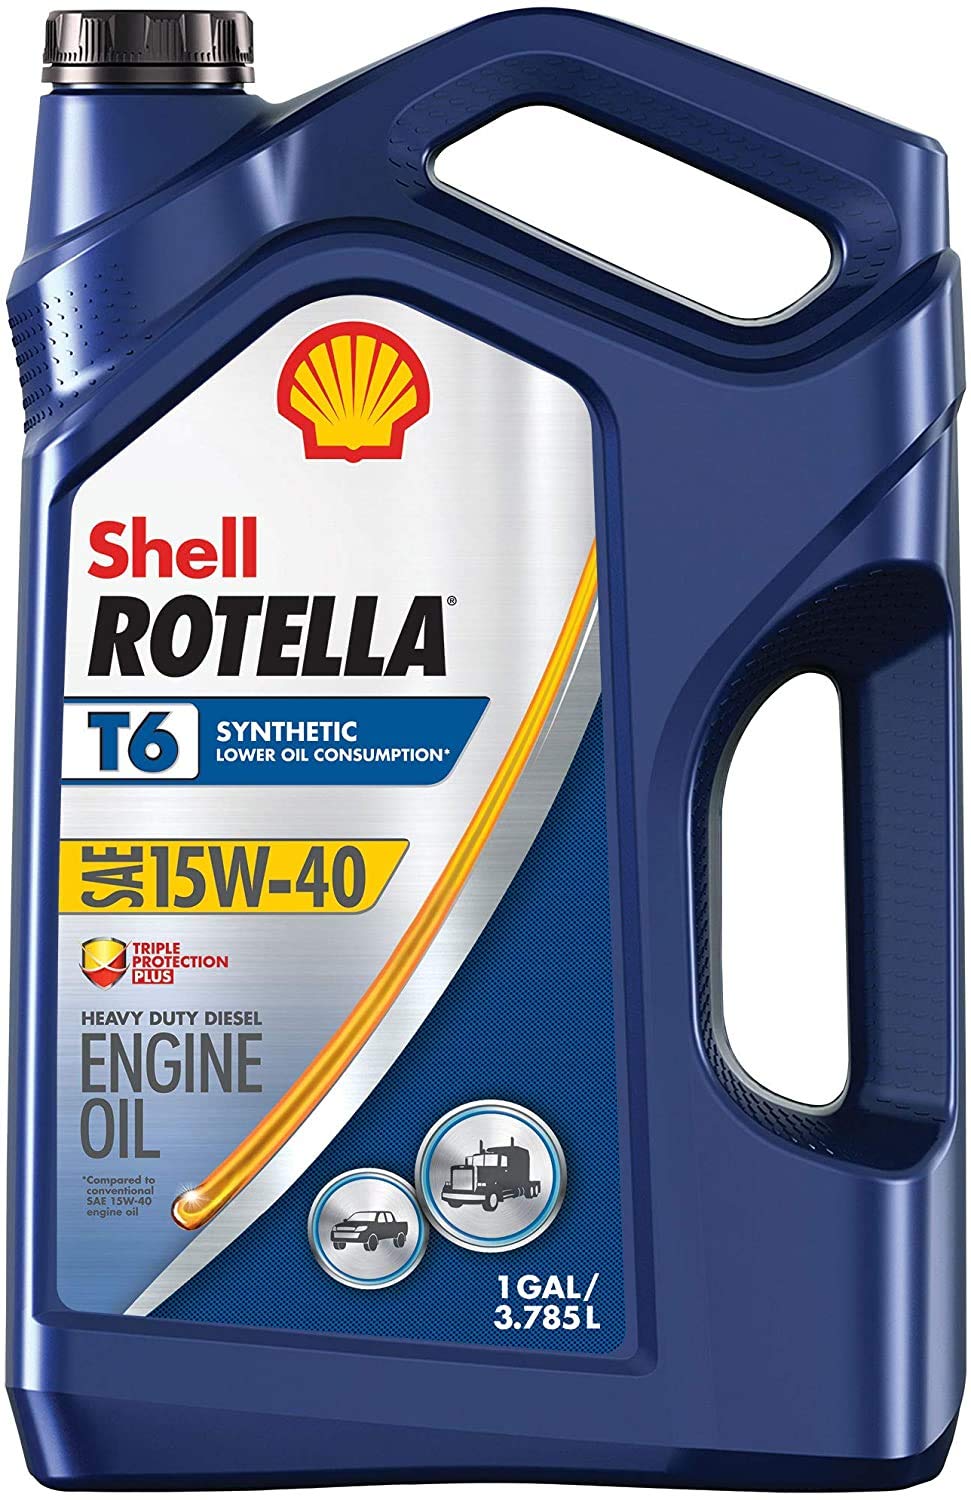 Shell Rotella W pełni syntetyczny olej do silników Dies...